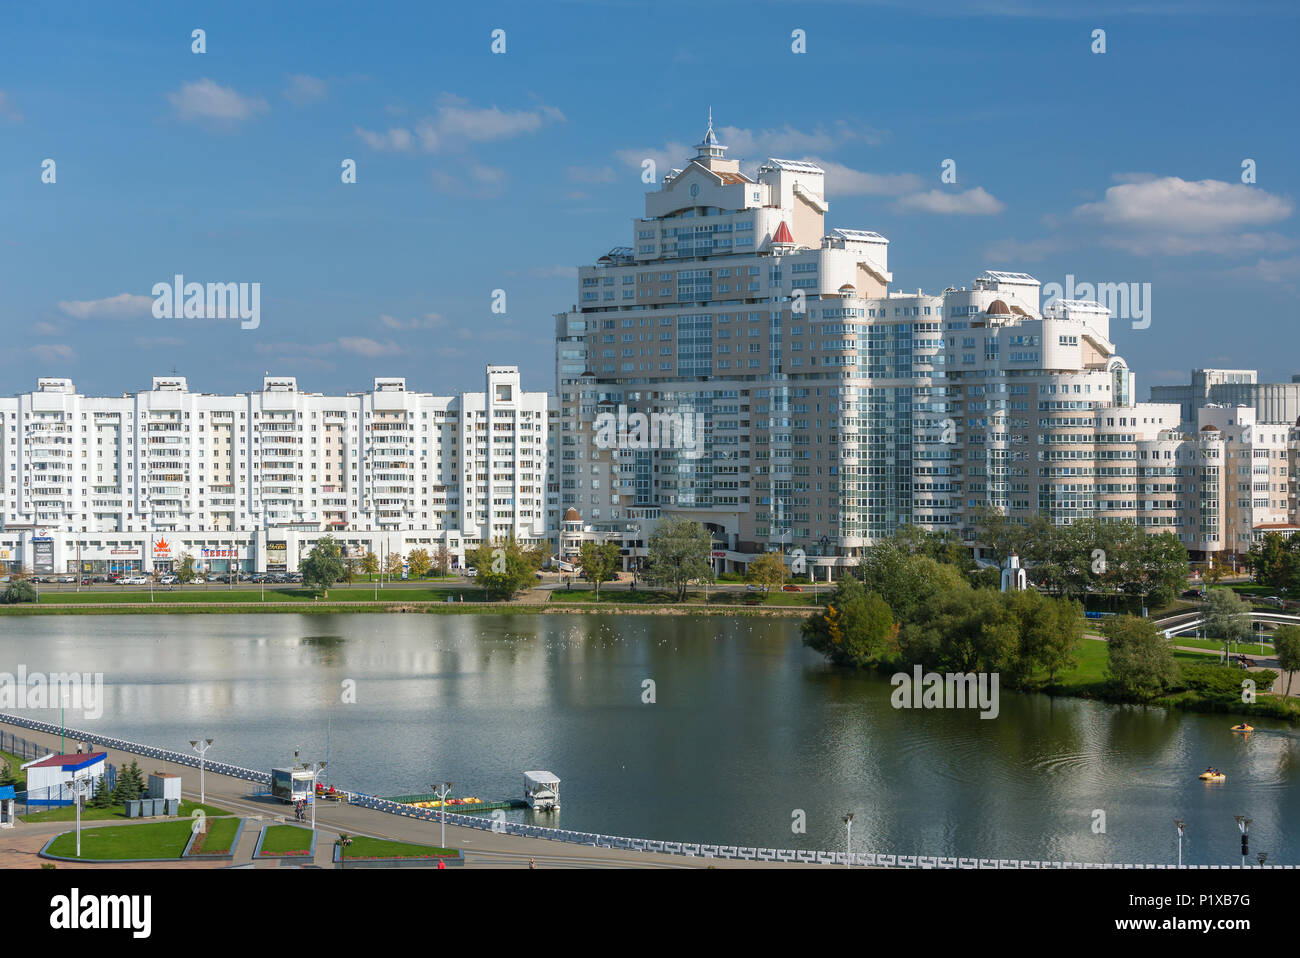 Minsk, Belarus - 27 septembre 2017 : voir l'immeuble blanc de Minsk en centre-ville, avec vue sur le quartier Nemiga rivière Svisloch, le Bélarus. Banque D'Images